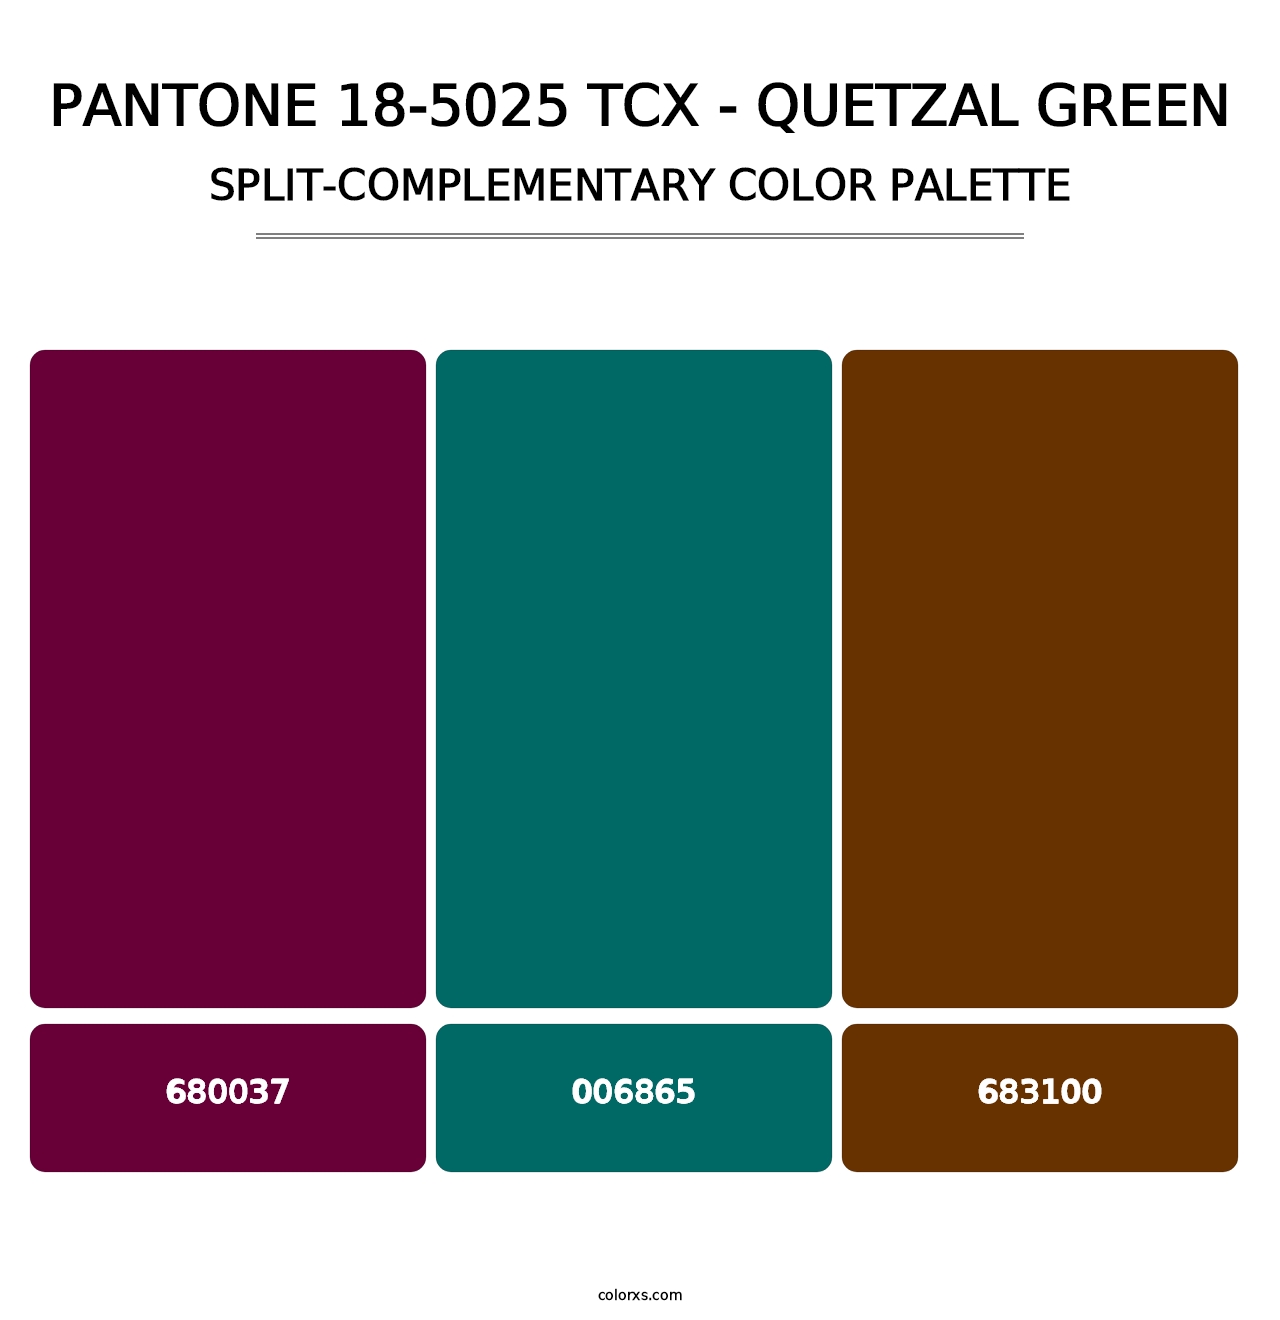 PANTONE 18-5025 TCX - Quetzal Green - Split-Complementary Color Palette